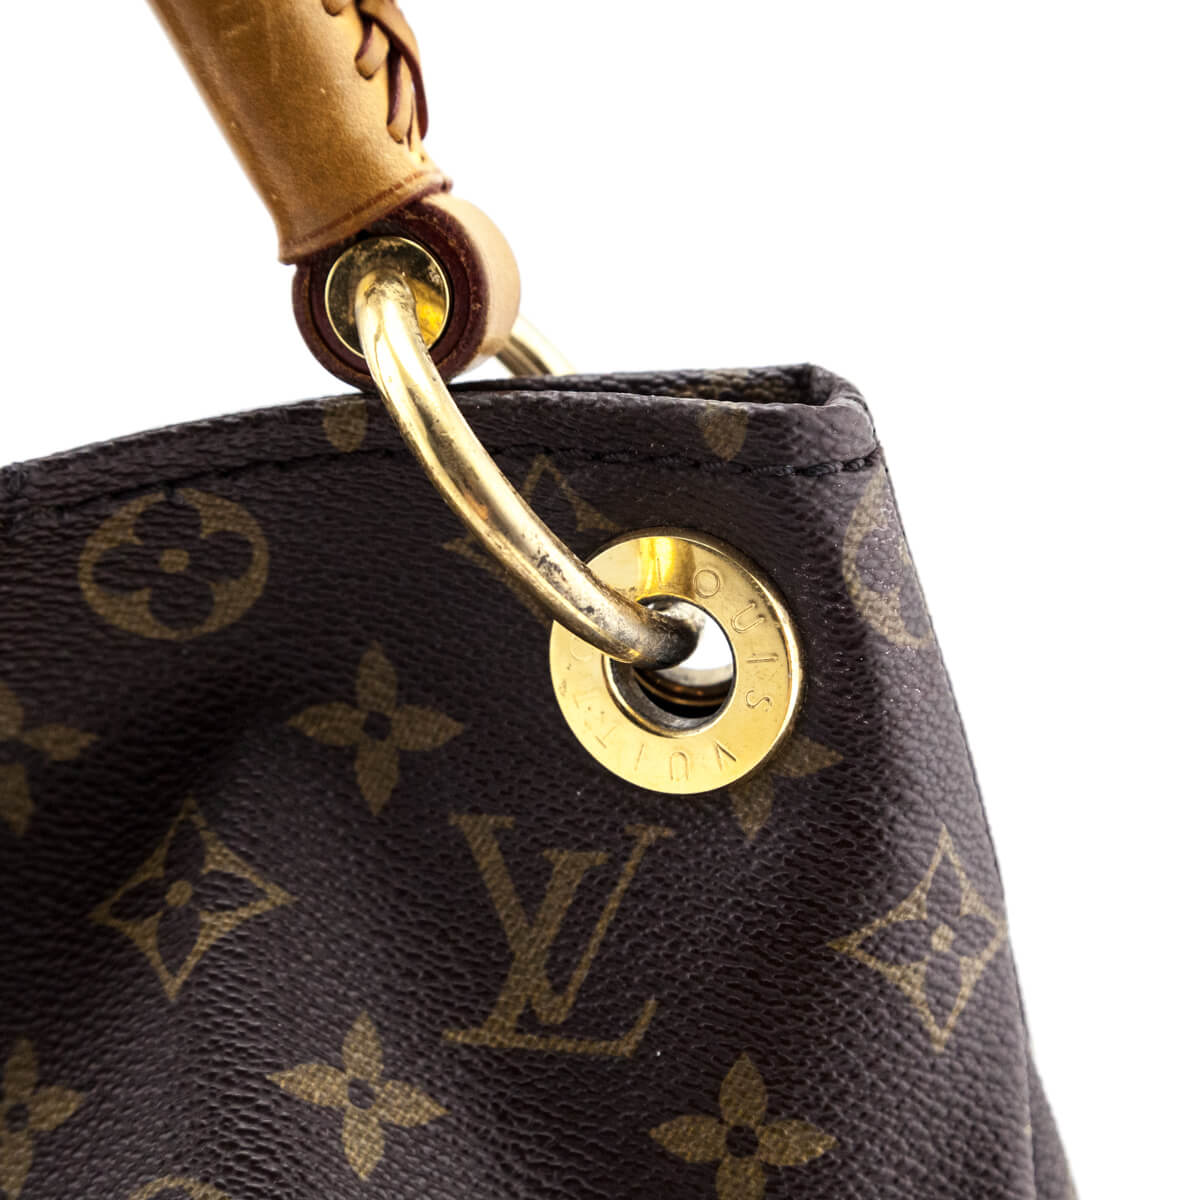 Louis Vuitton Monogram Artsy MM - Shop Louis Vuitton Handbags Canada